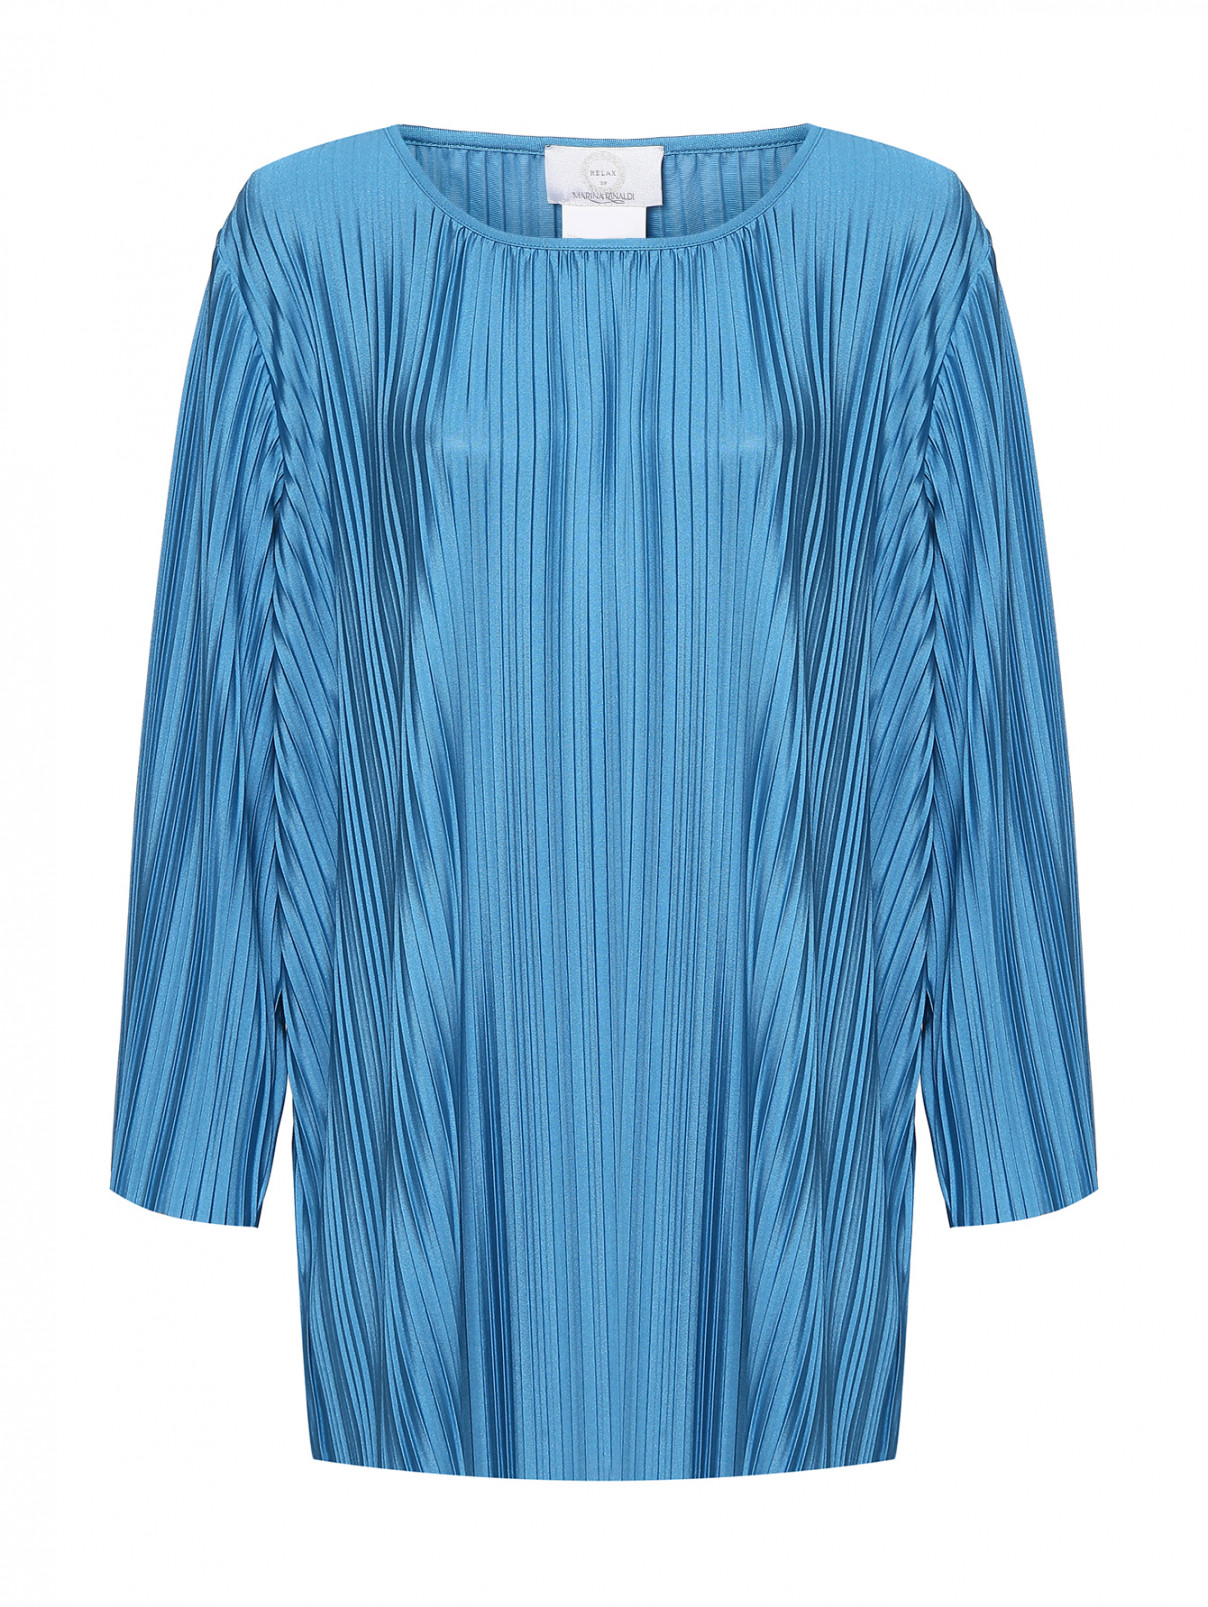 Блуза с мелкую плиссировку Marina Rinaldi  –  Общий вид  – Цвет:  Синий